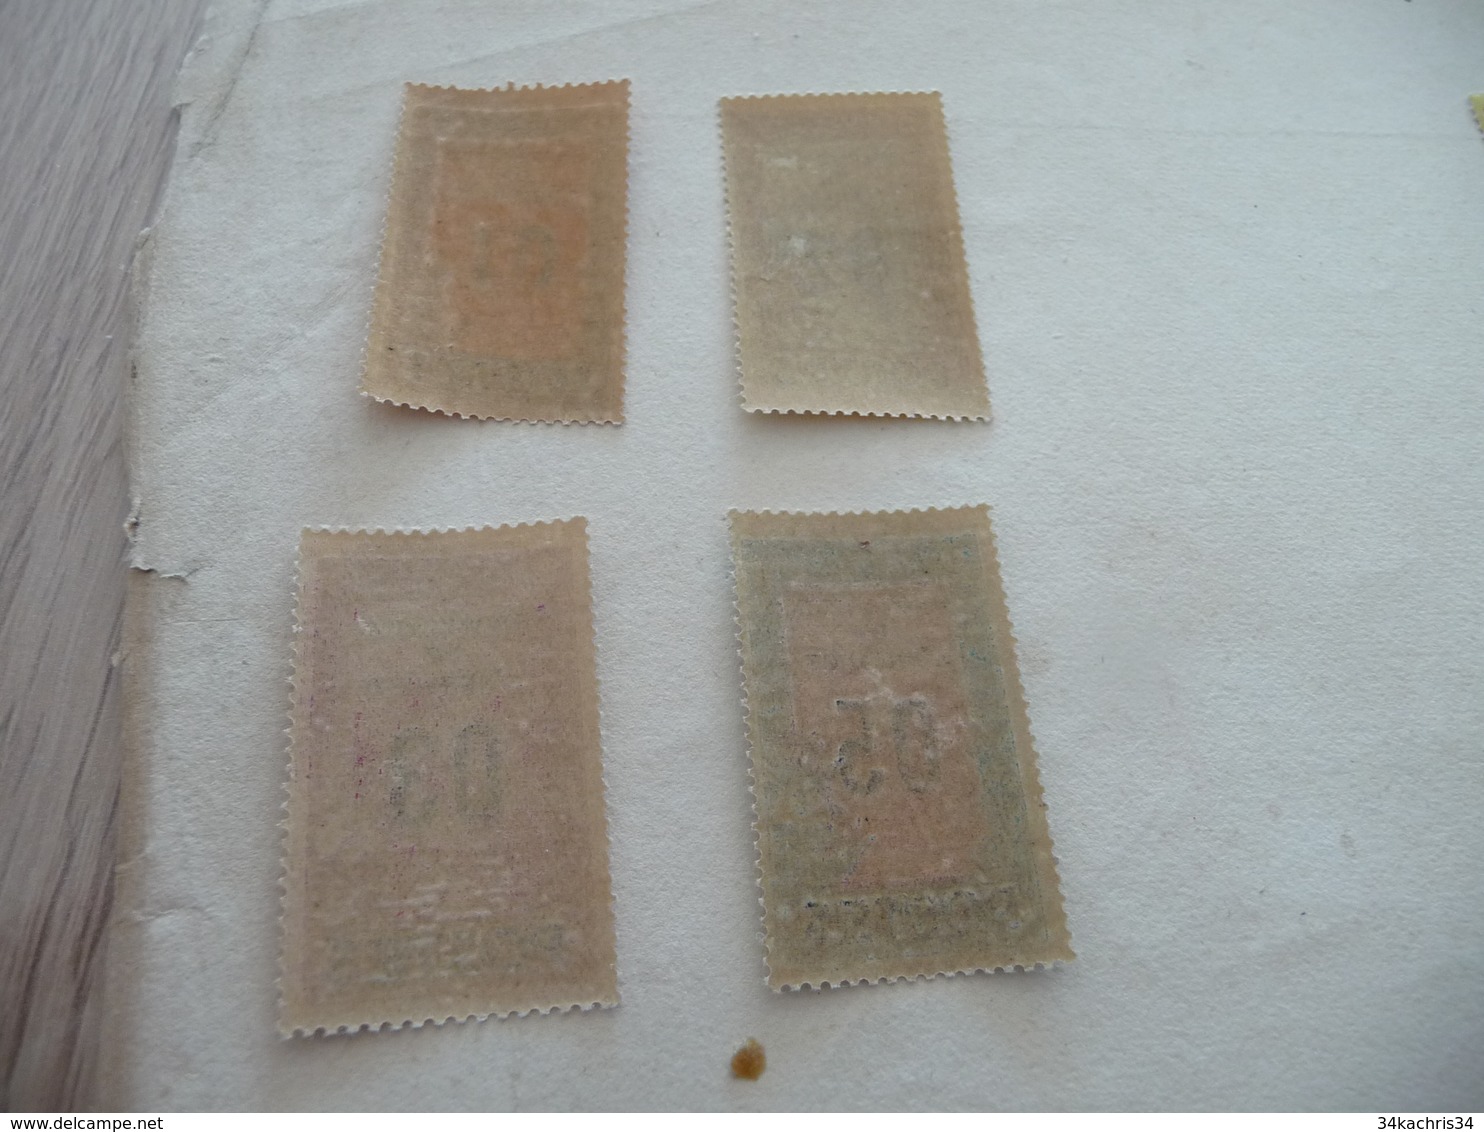 TP France Colonie Française Tunisie N°110 à  119  Charnière - Unused Stamps